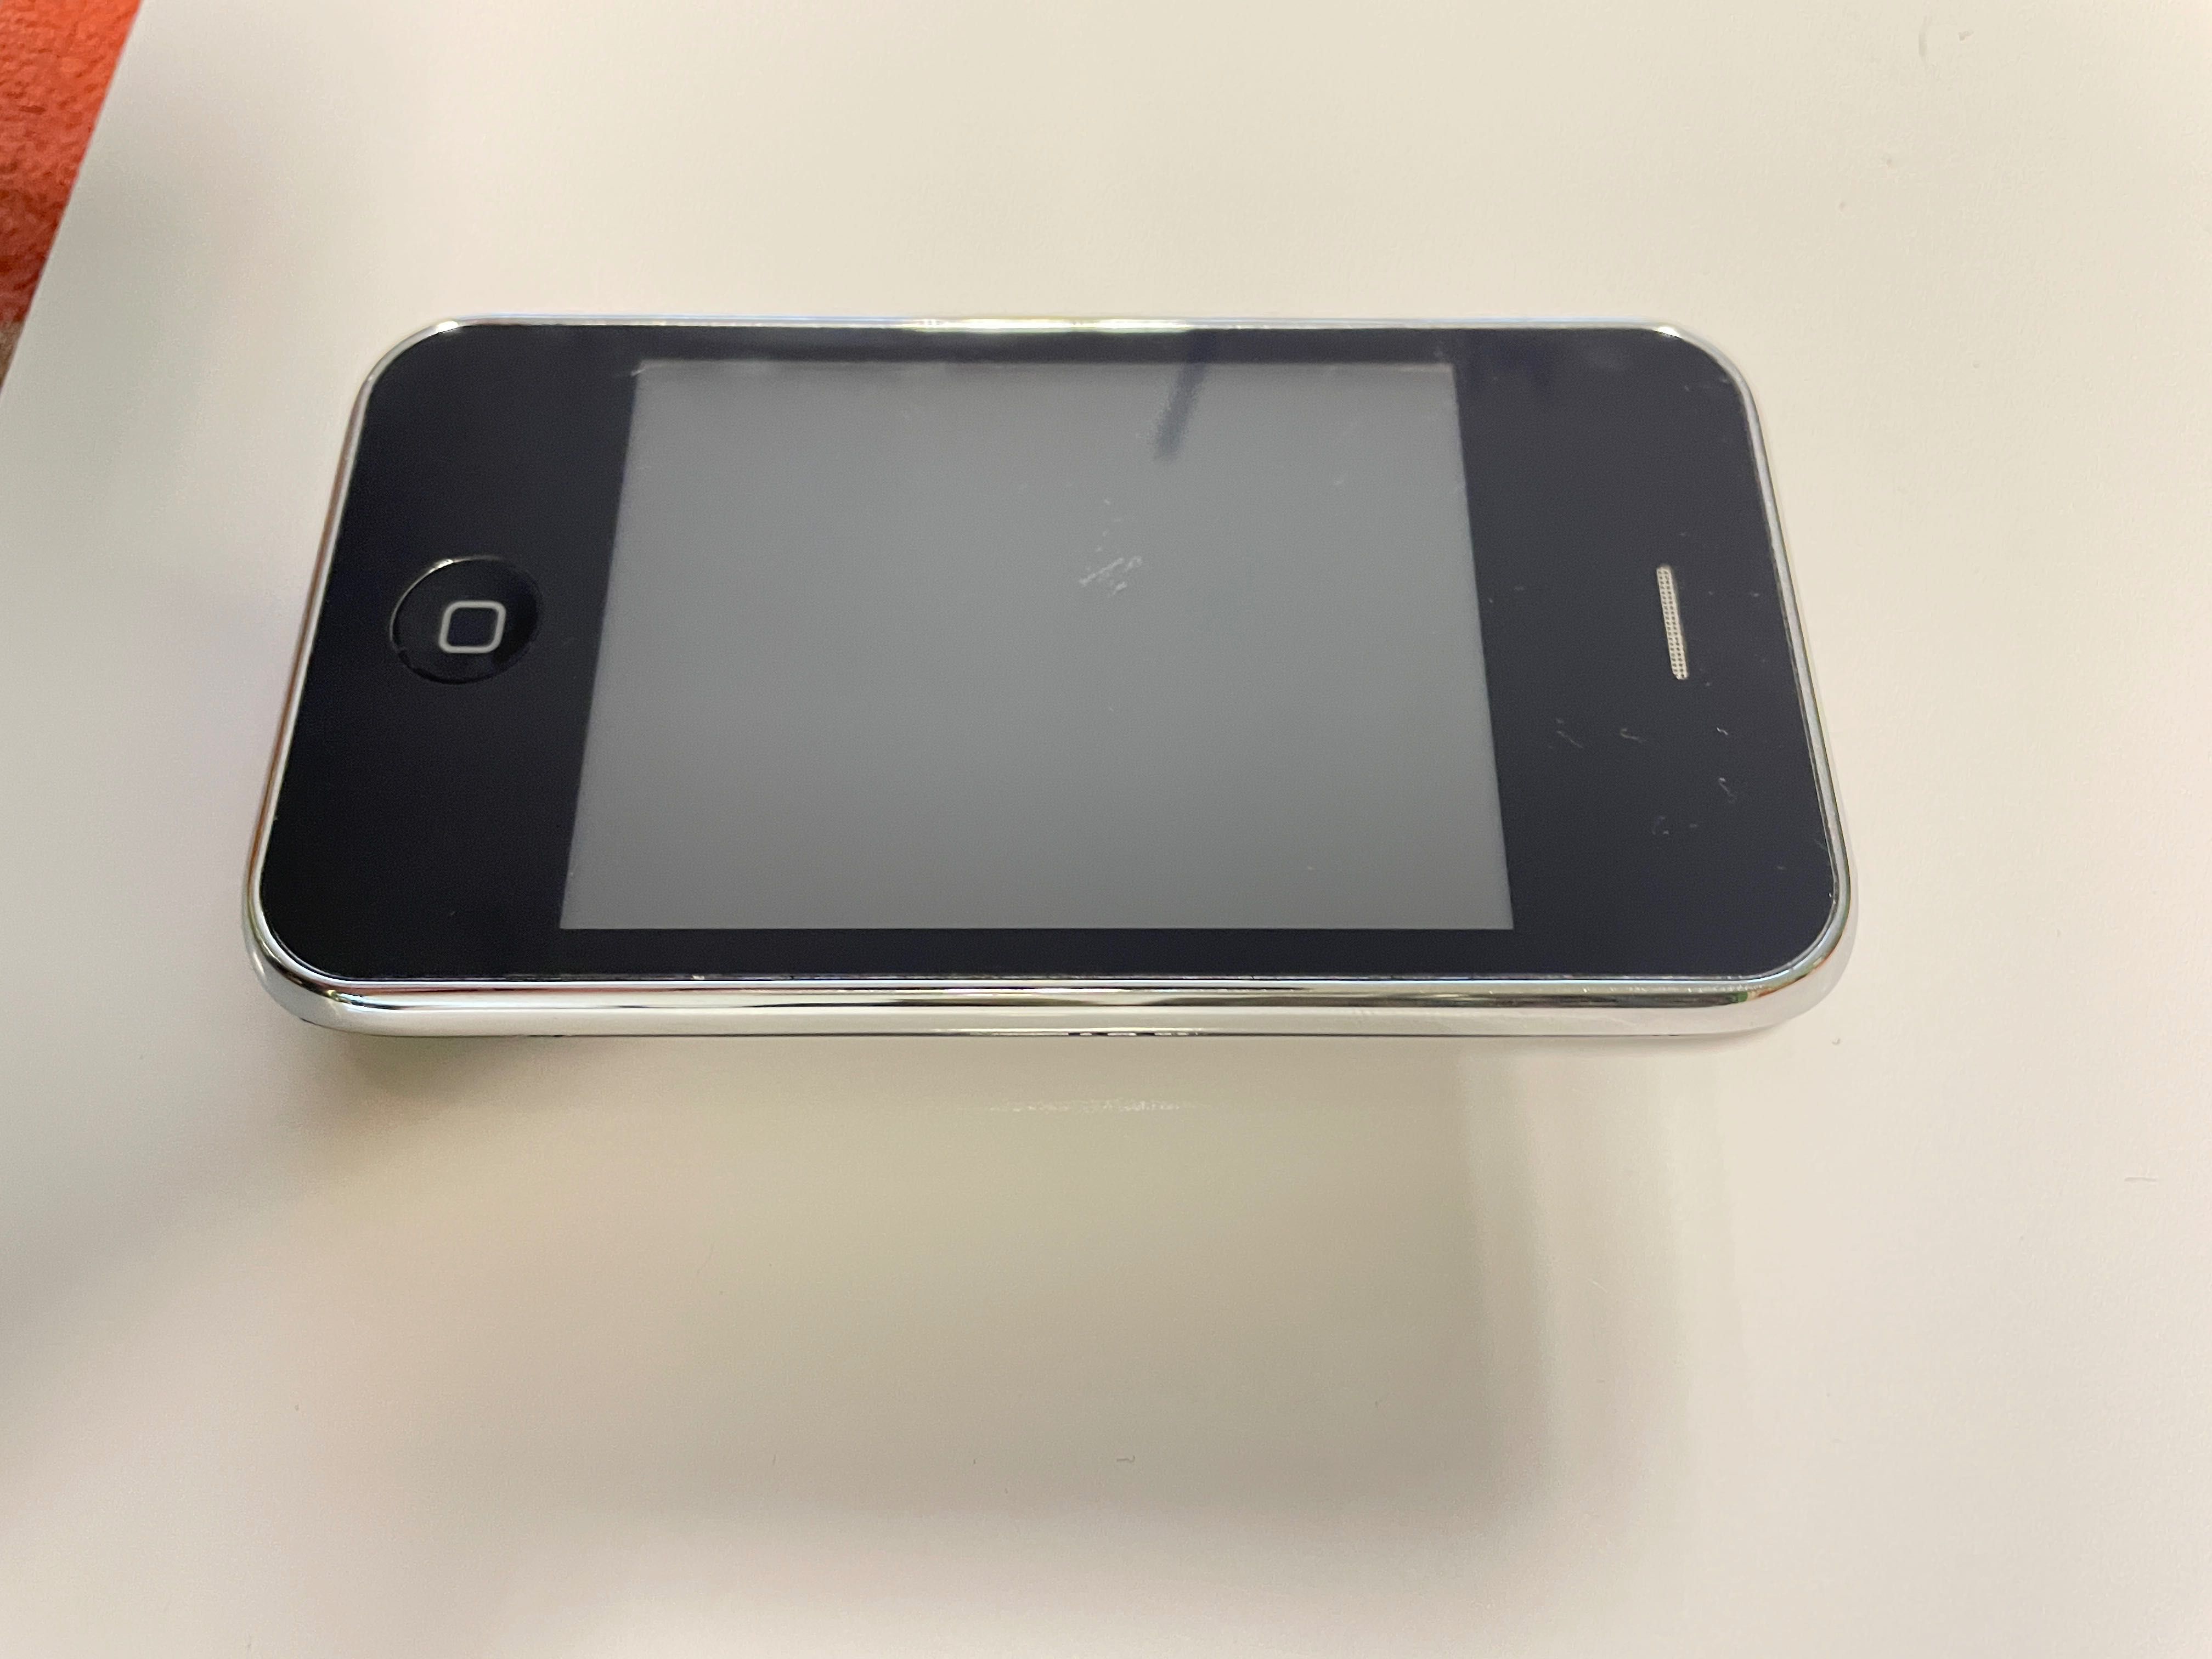 Iphone 3g, iPod, iphone 4, pentru colectii, 120 ron pe bucata